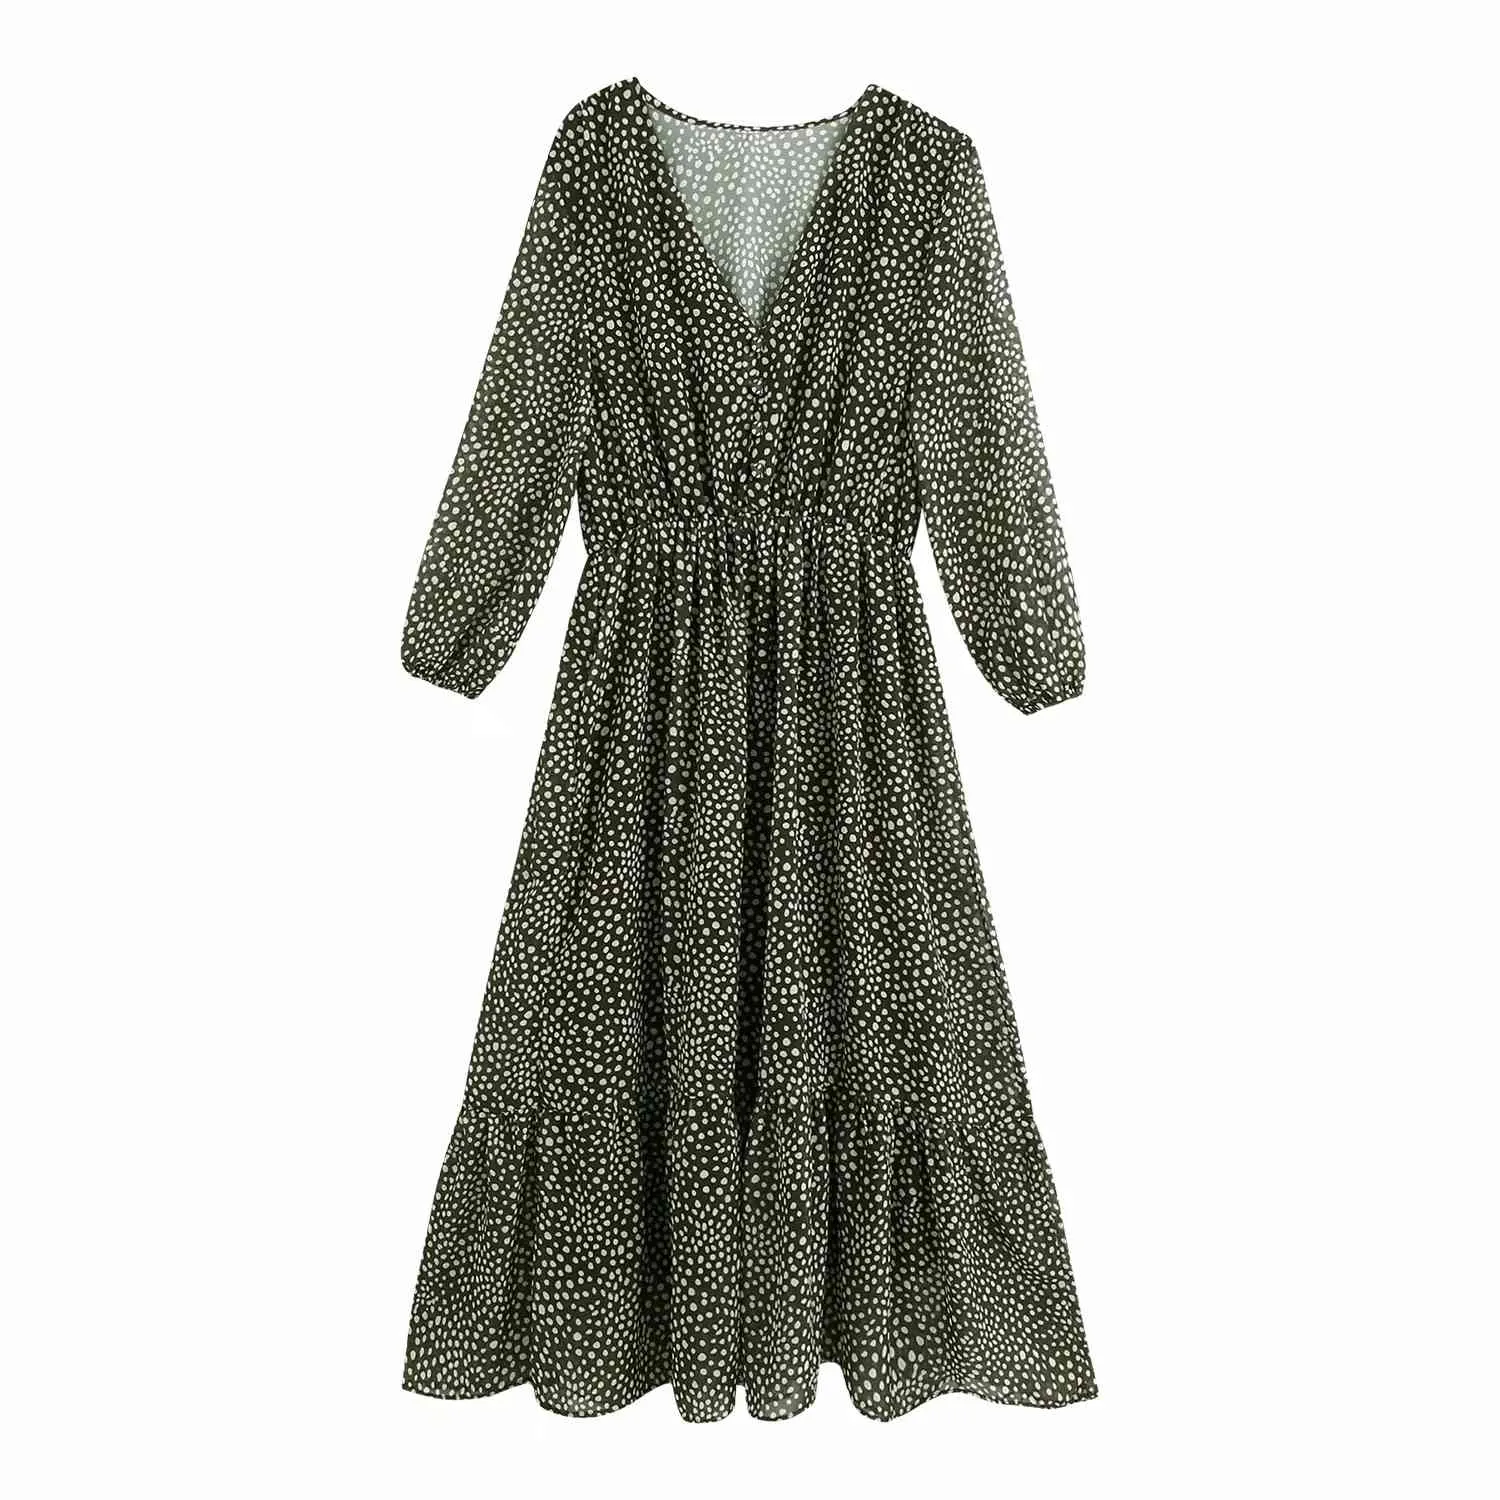 Pois automne hiver longue robe femmes col en v maxi en mousseline de soie robe élégante dames vert vintage robe vestidos 210415